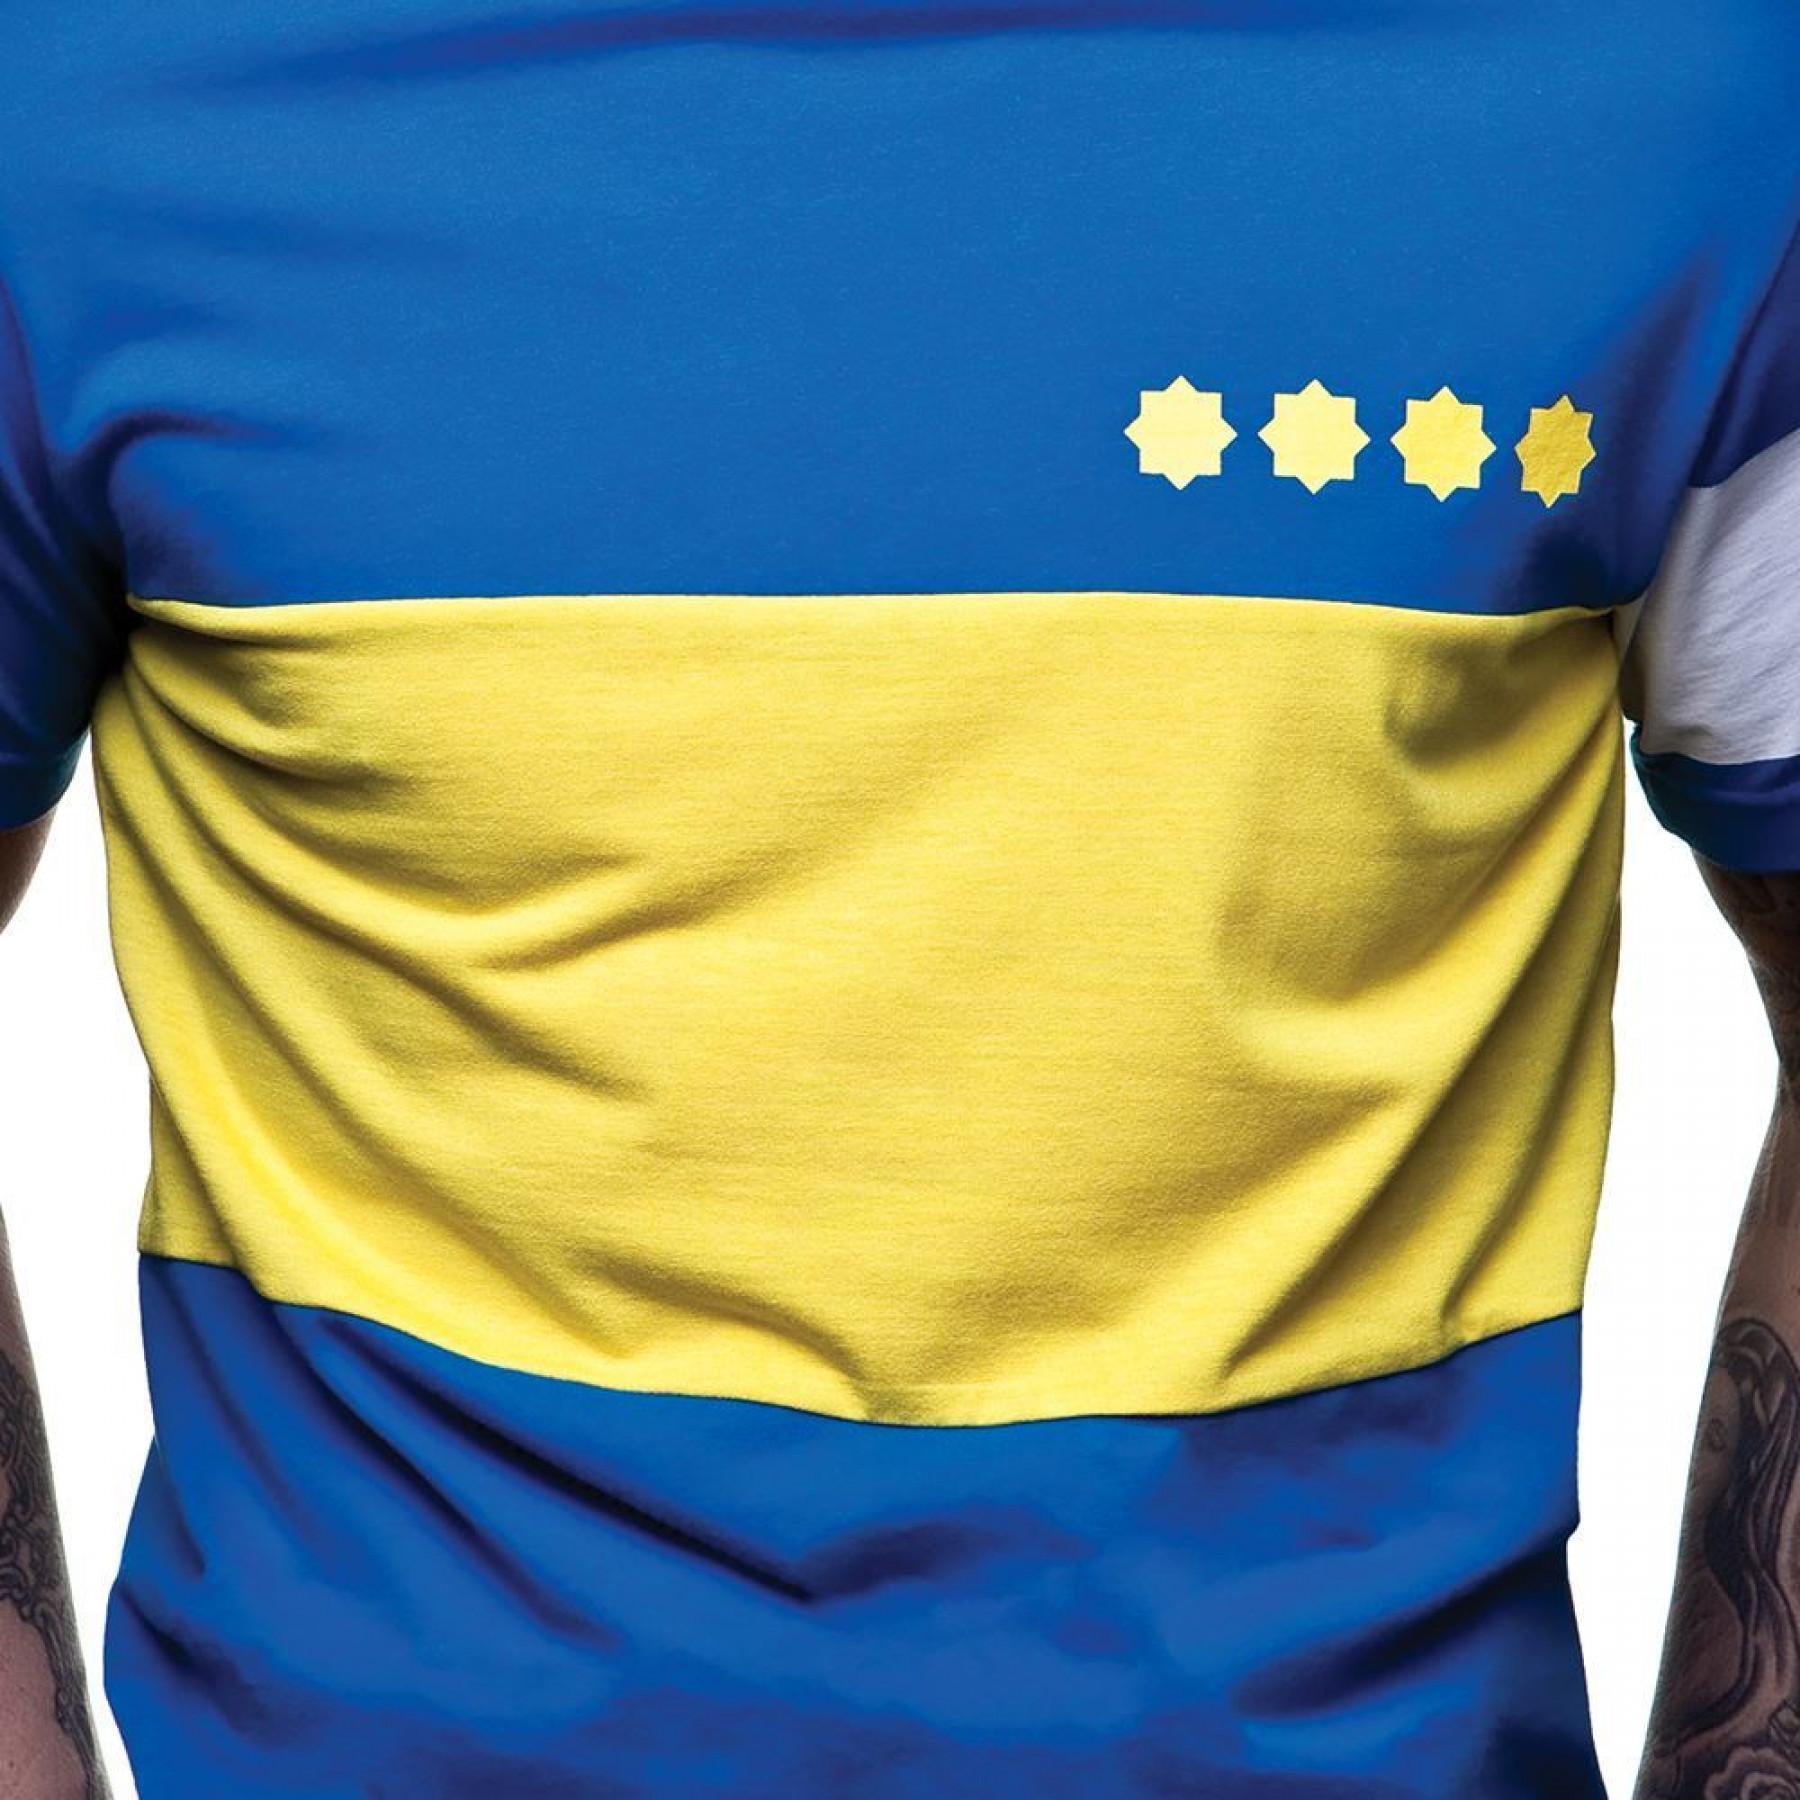 T-shirt do capitão Boca Juniors